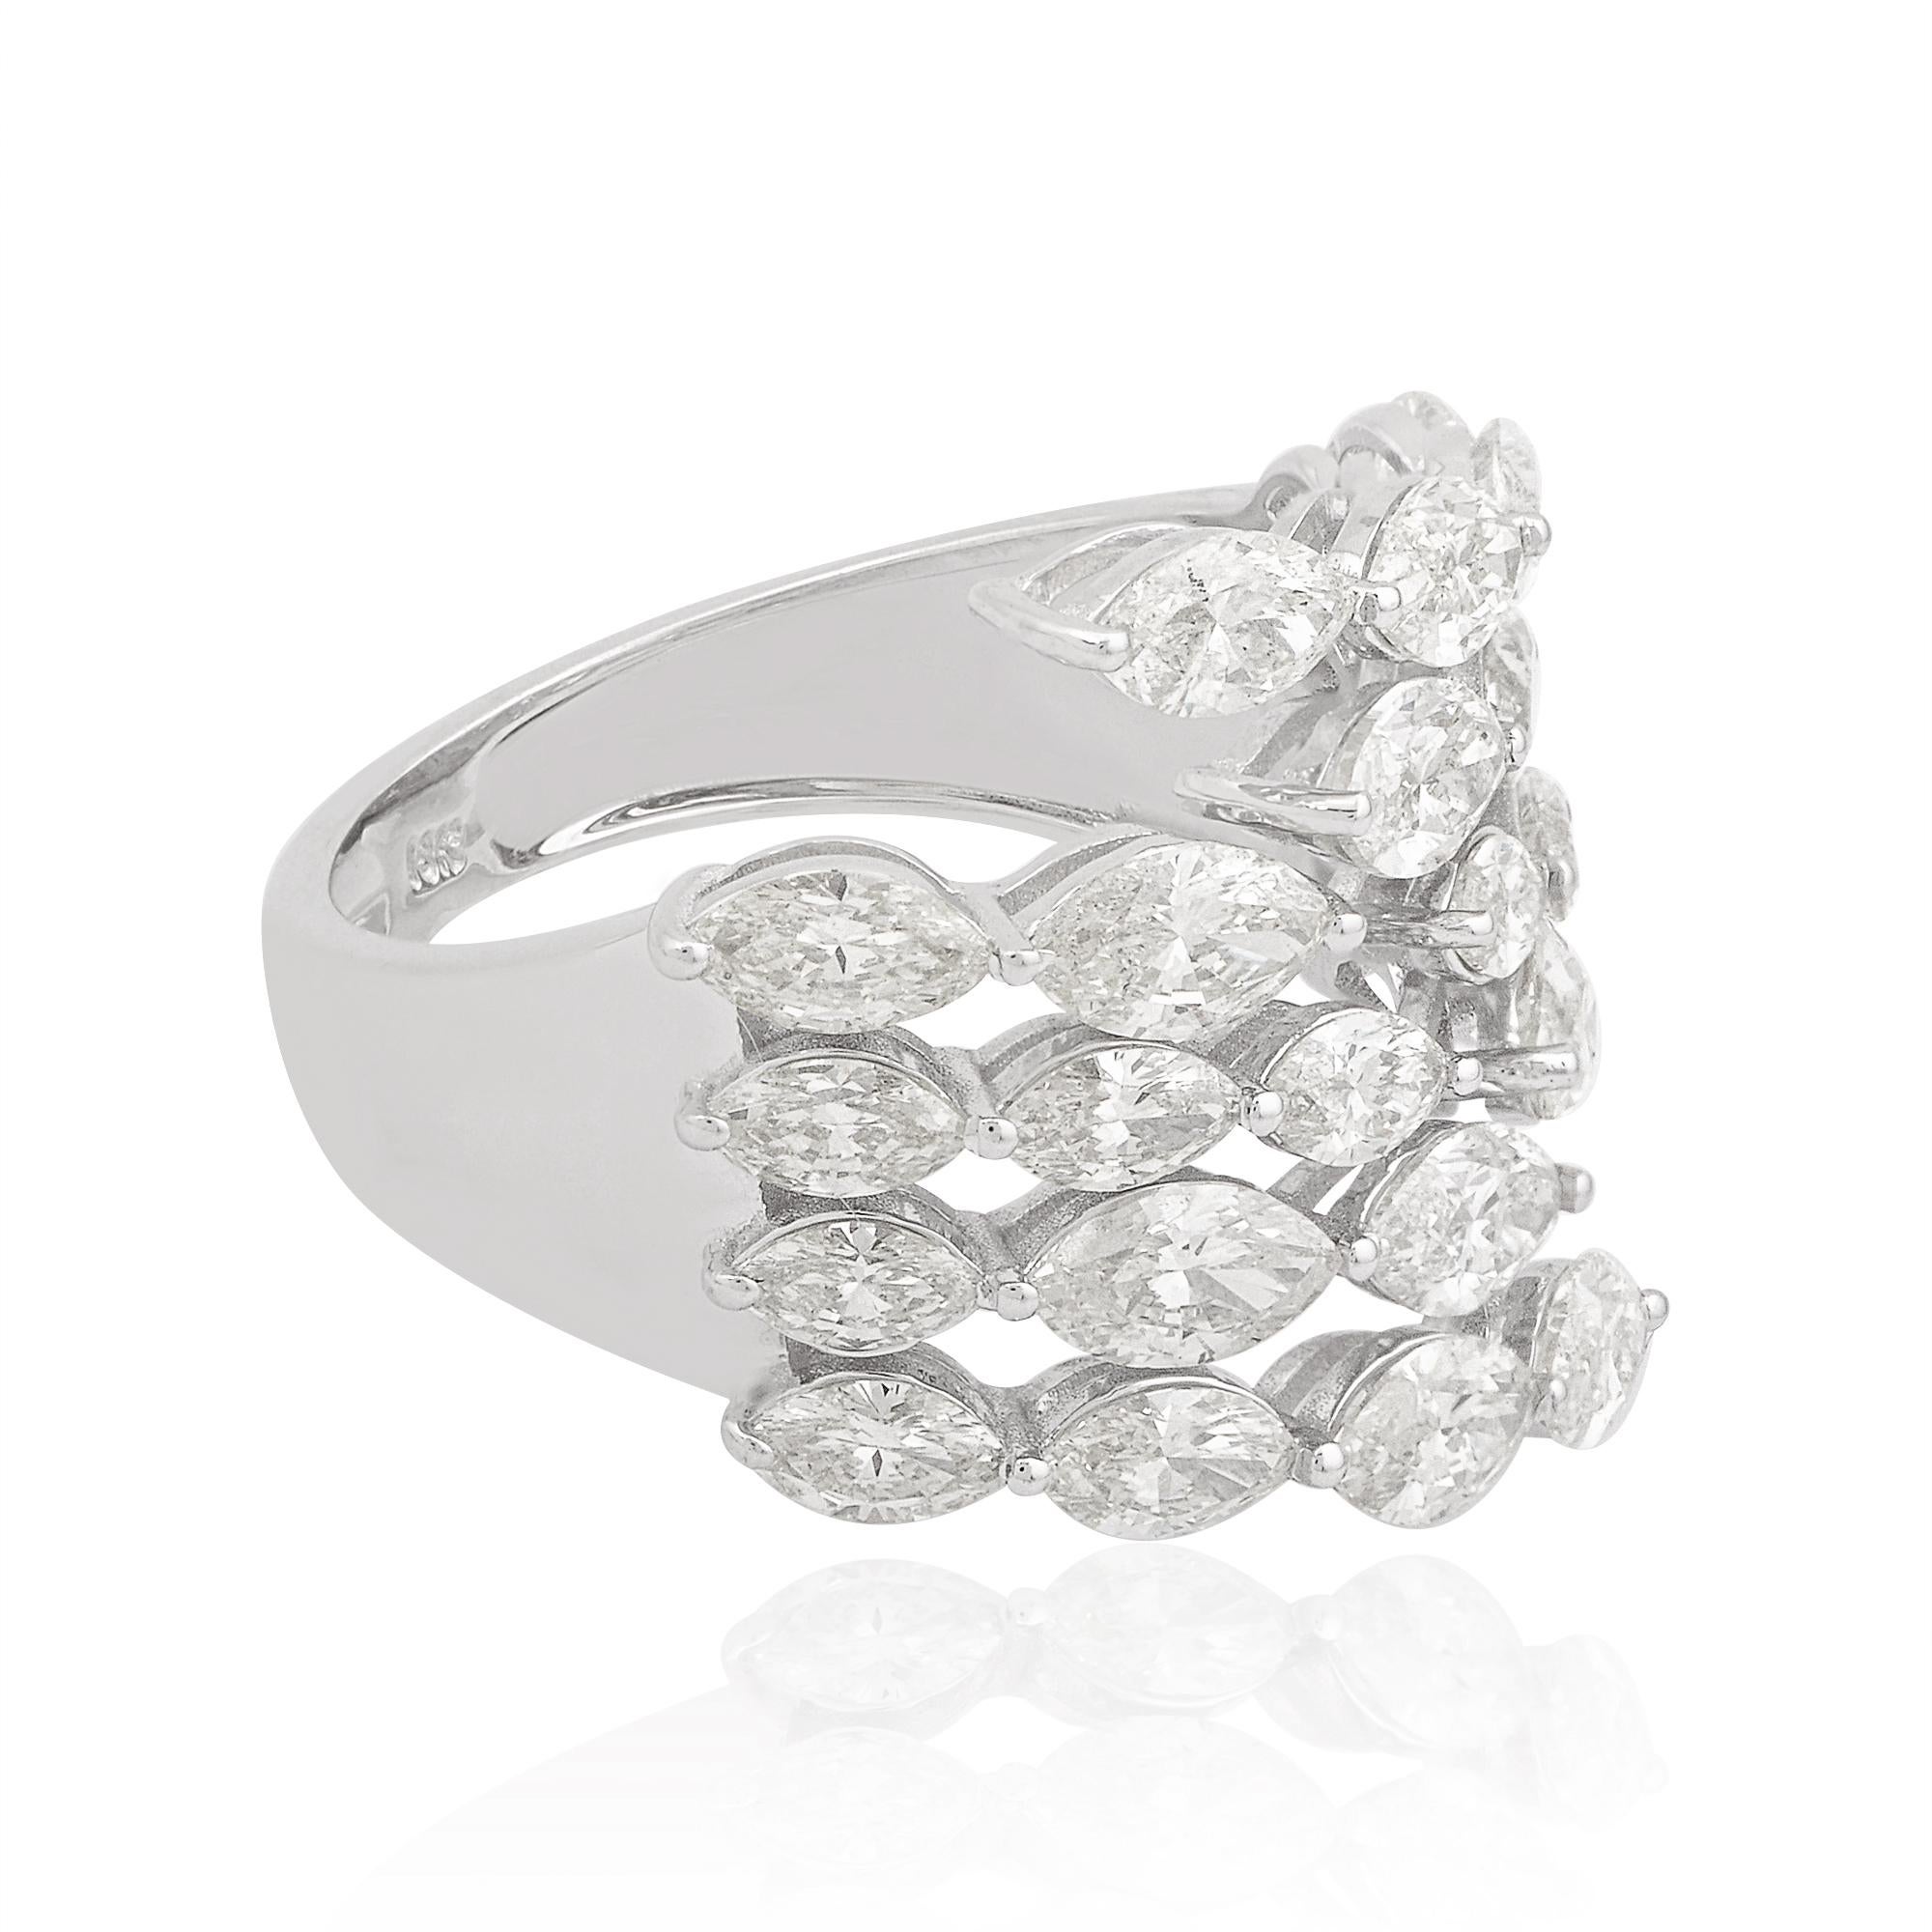 Dieser aus massivem 14-karätigem Gold gefertigte Ring ist mit einem Cluster aus funkelnden Diamanten besetzt, die einen wahrhaft schillernden Effekt erzeugen. Die Diamanten sind fachmännisch in einer sicheren Zackenfassung gefasst, die dafür sorgt,